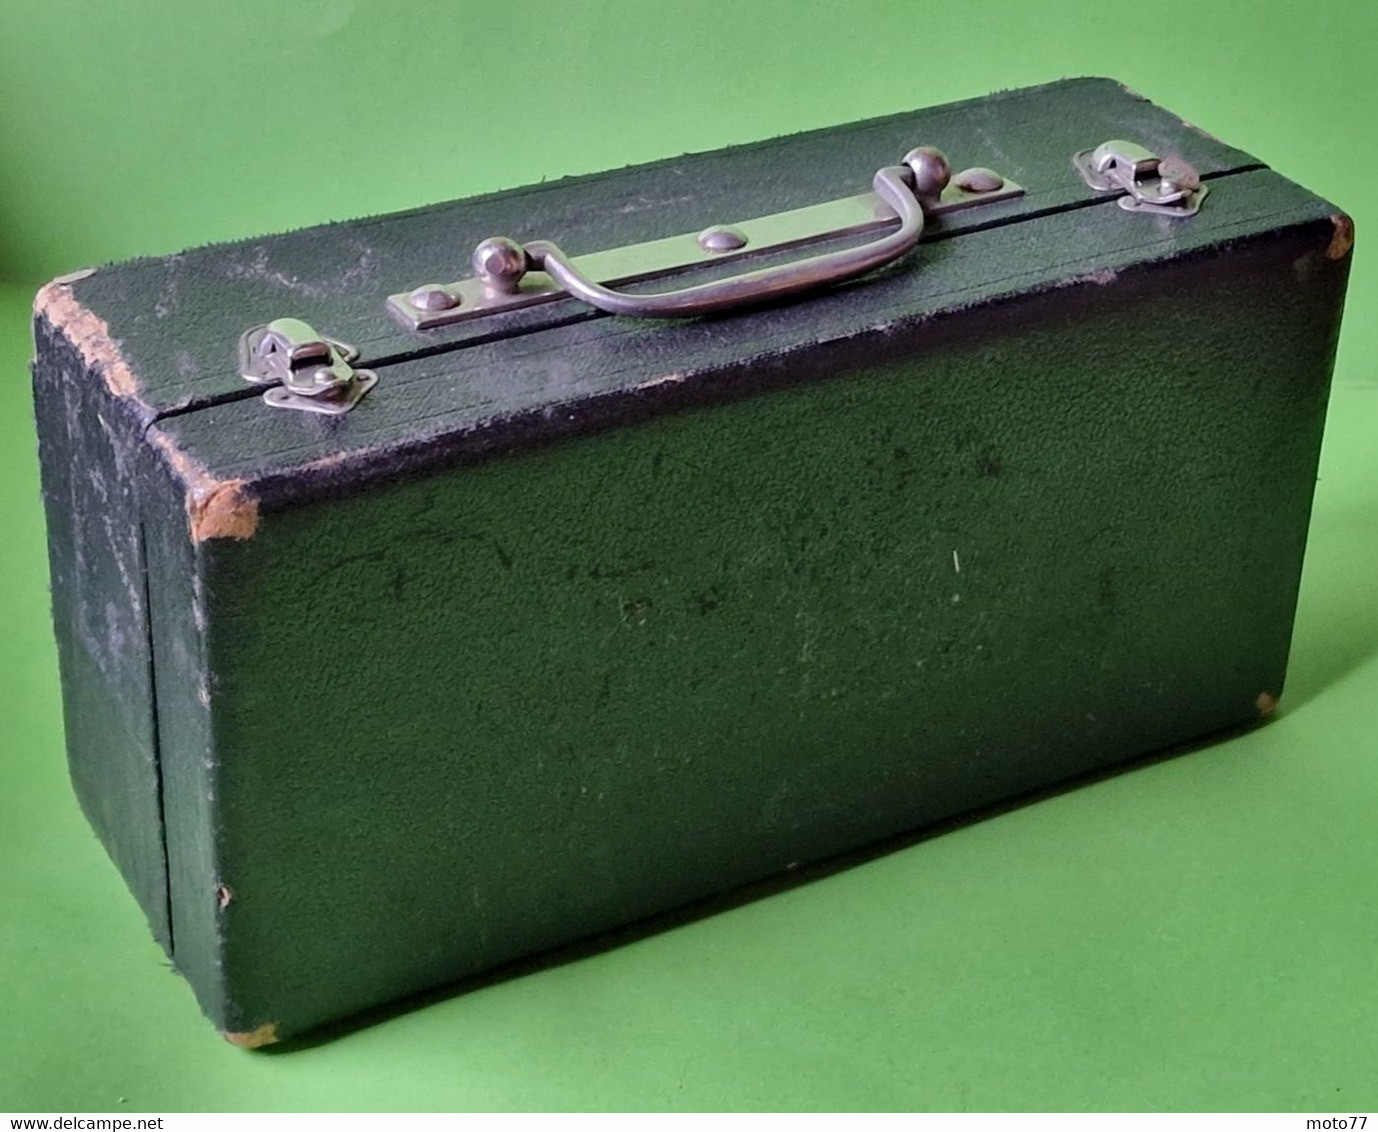 Ancien appareil ÉTALON mesure PRESSION 25 bars - Métal chromé - Jolie Boite bois  "laissé dans son jus" - vers 1960